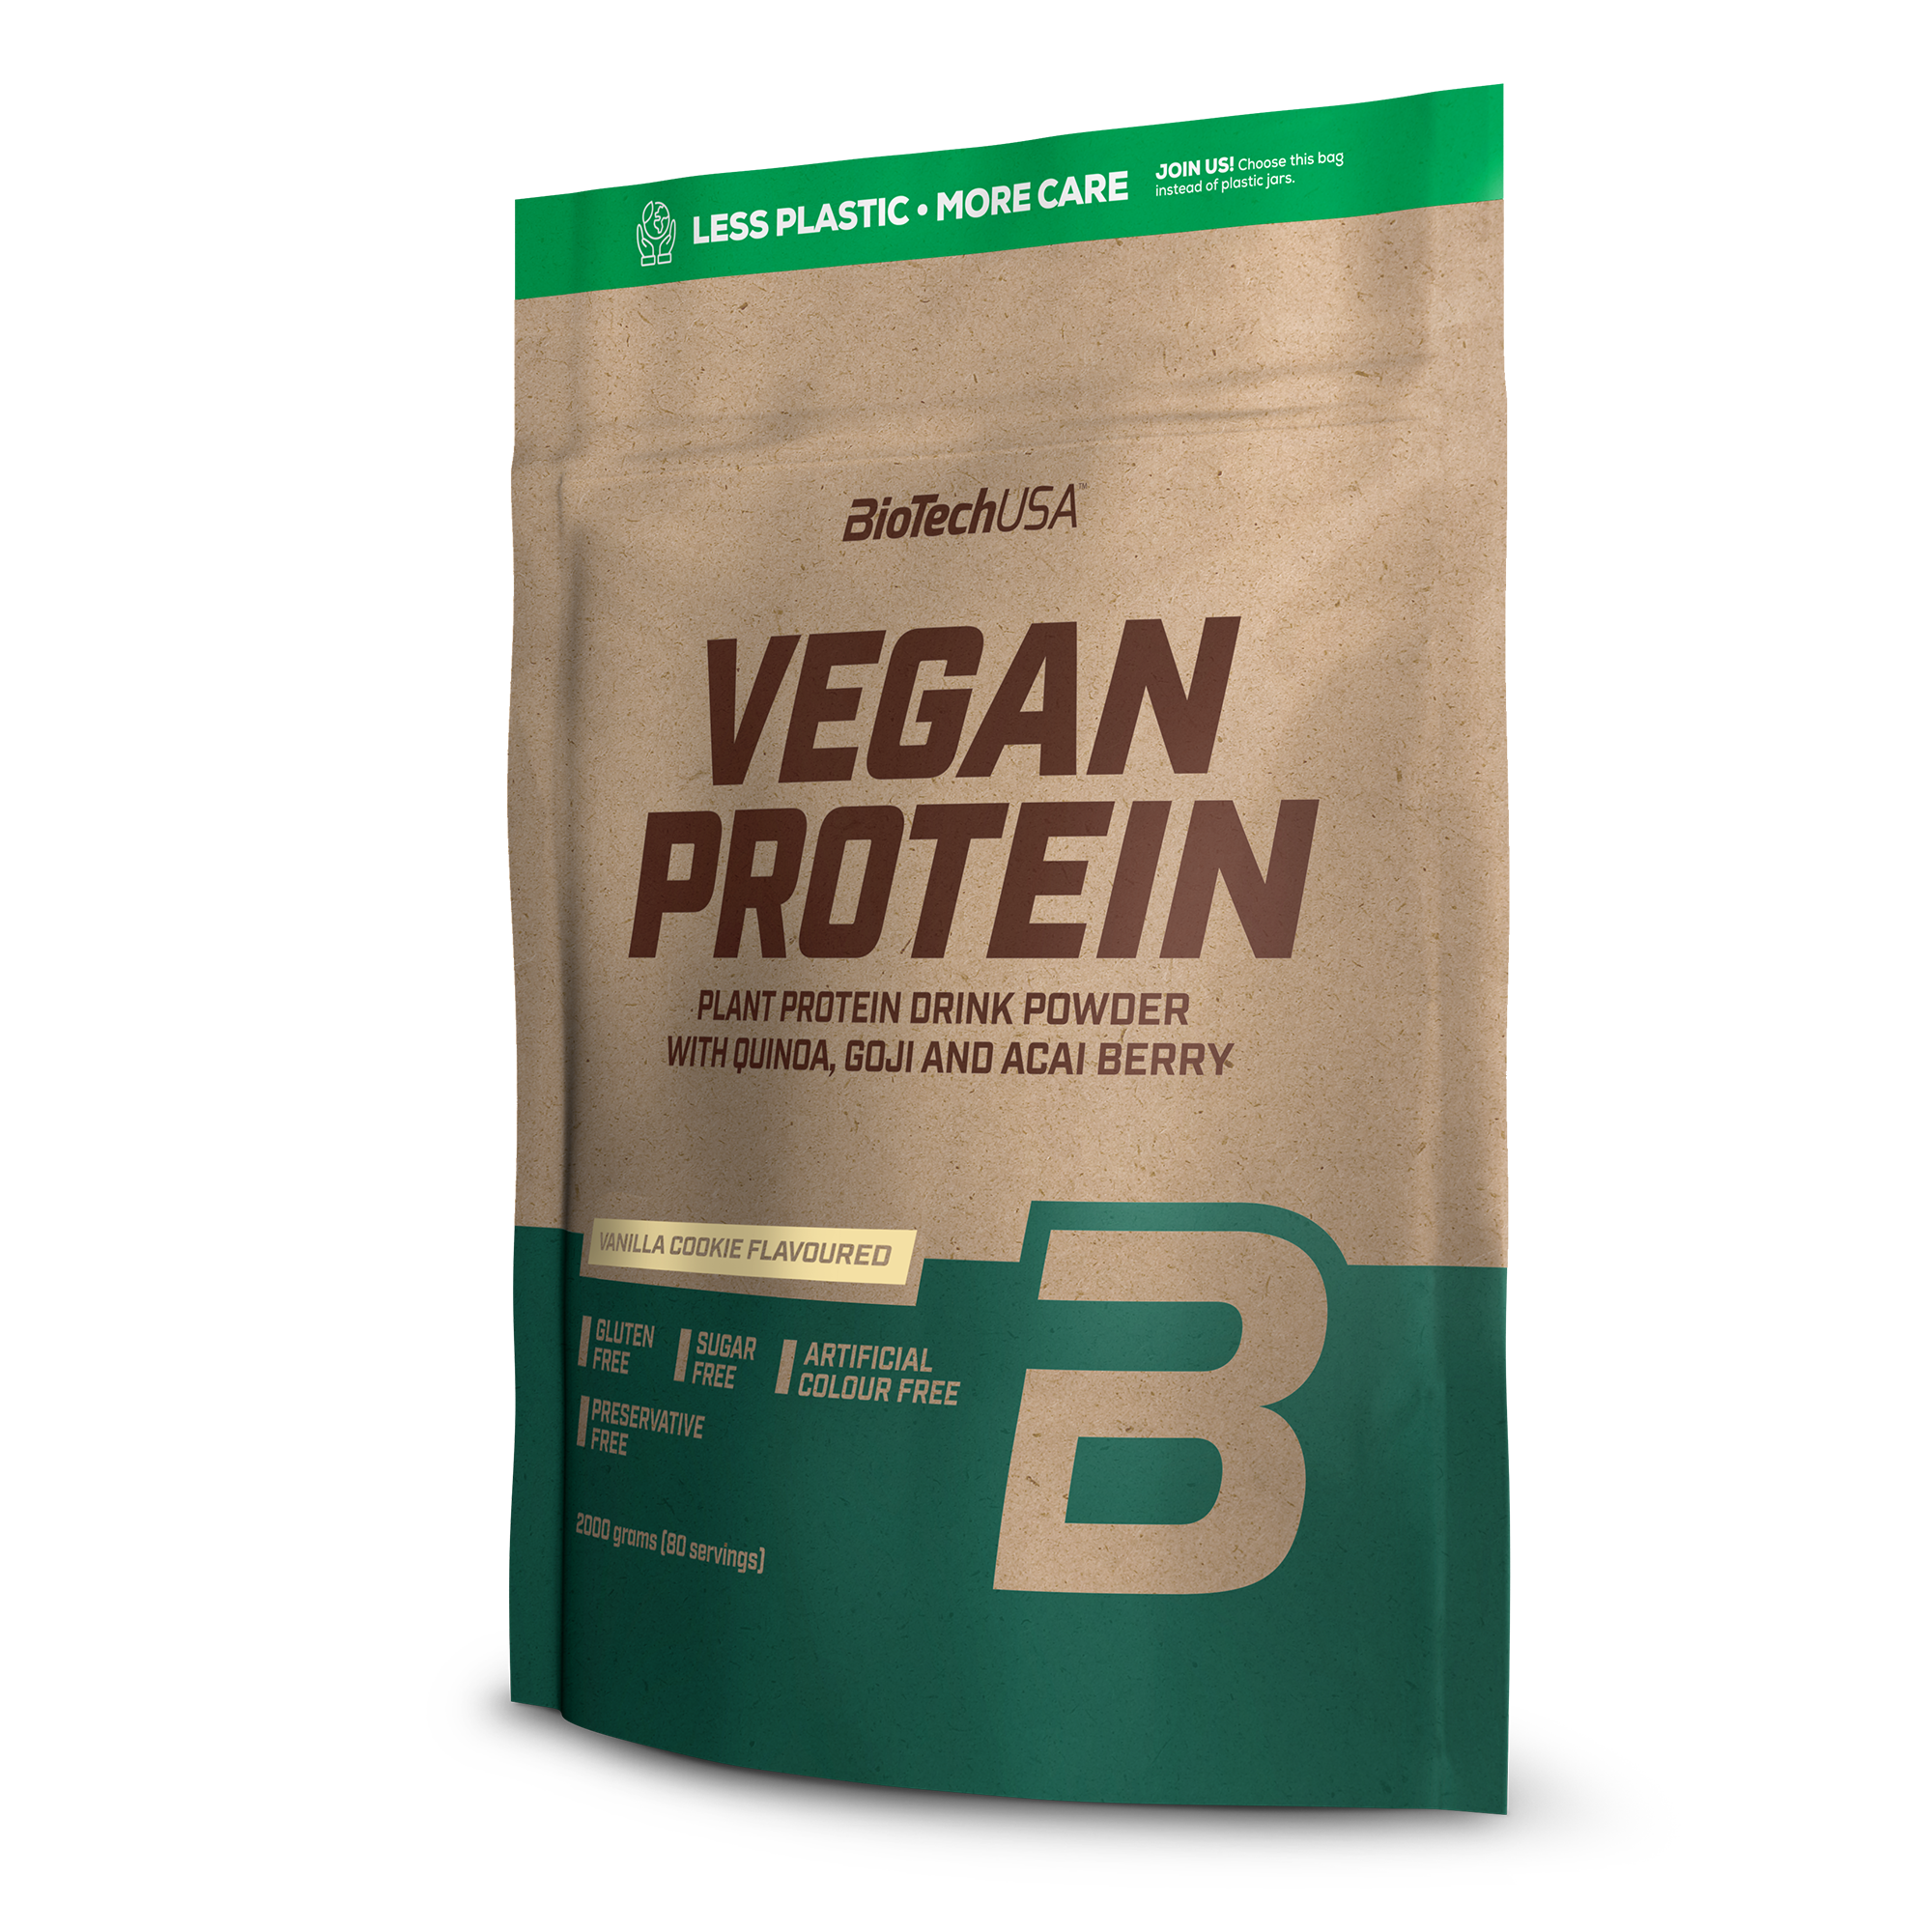 Vegan Protein Vanilla Cookies - 1 x 2000g